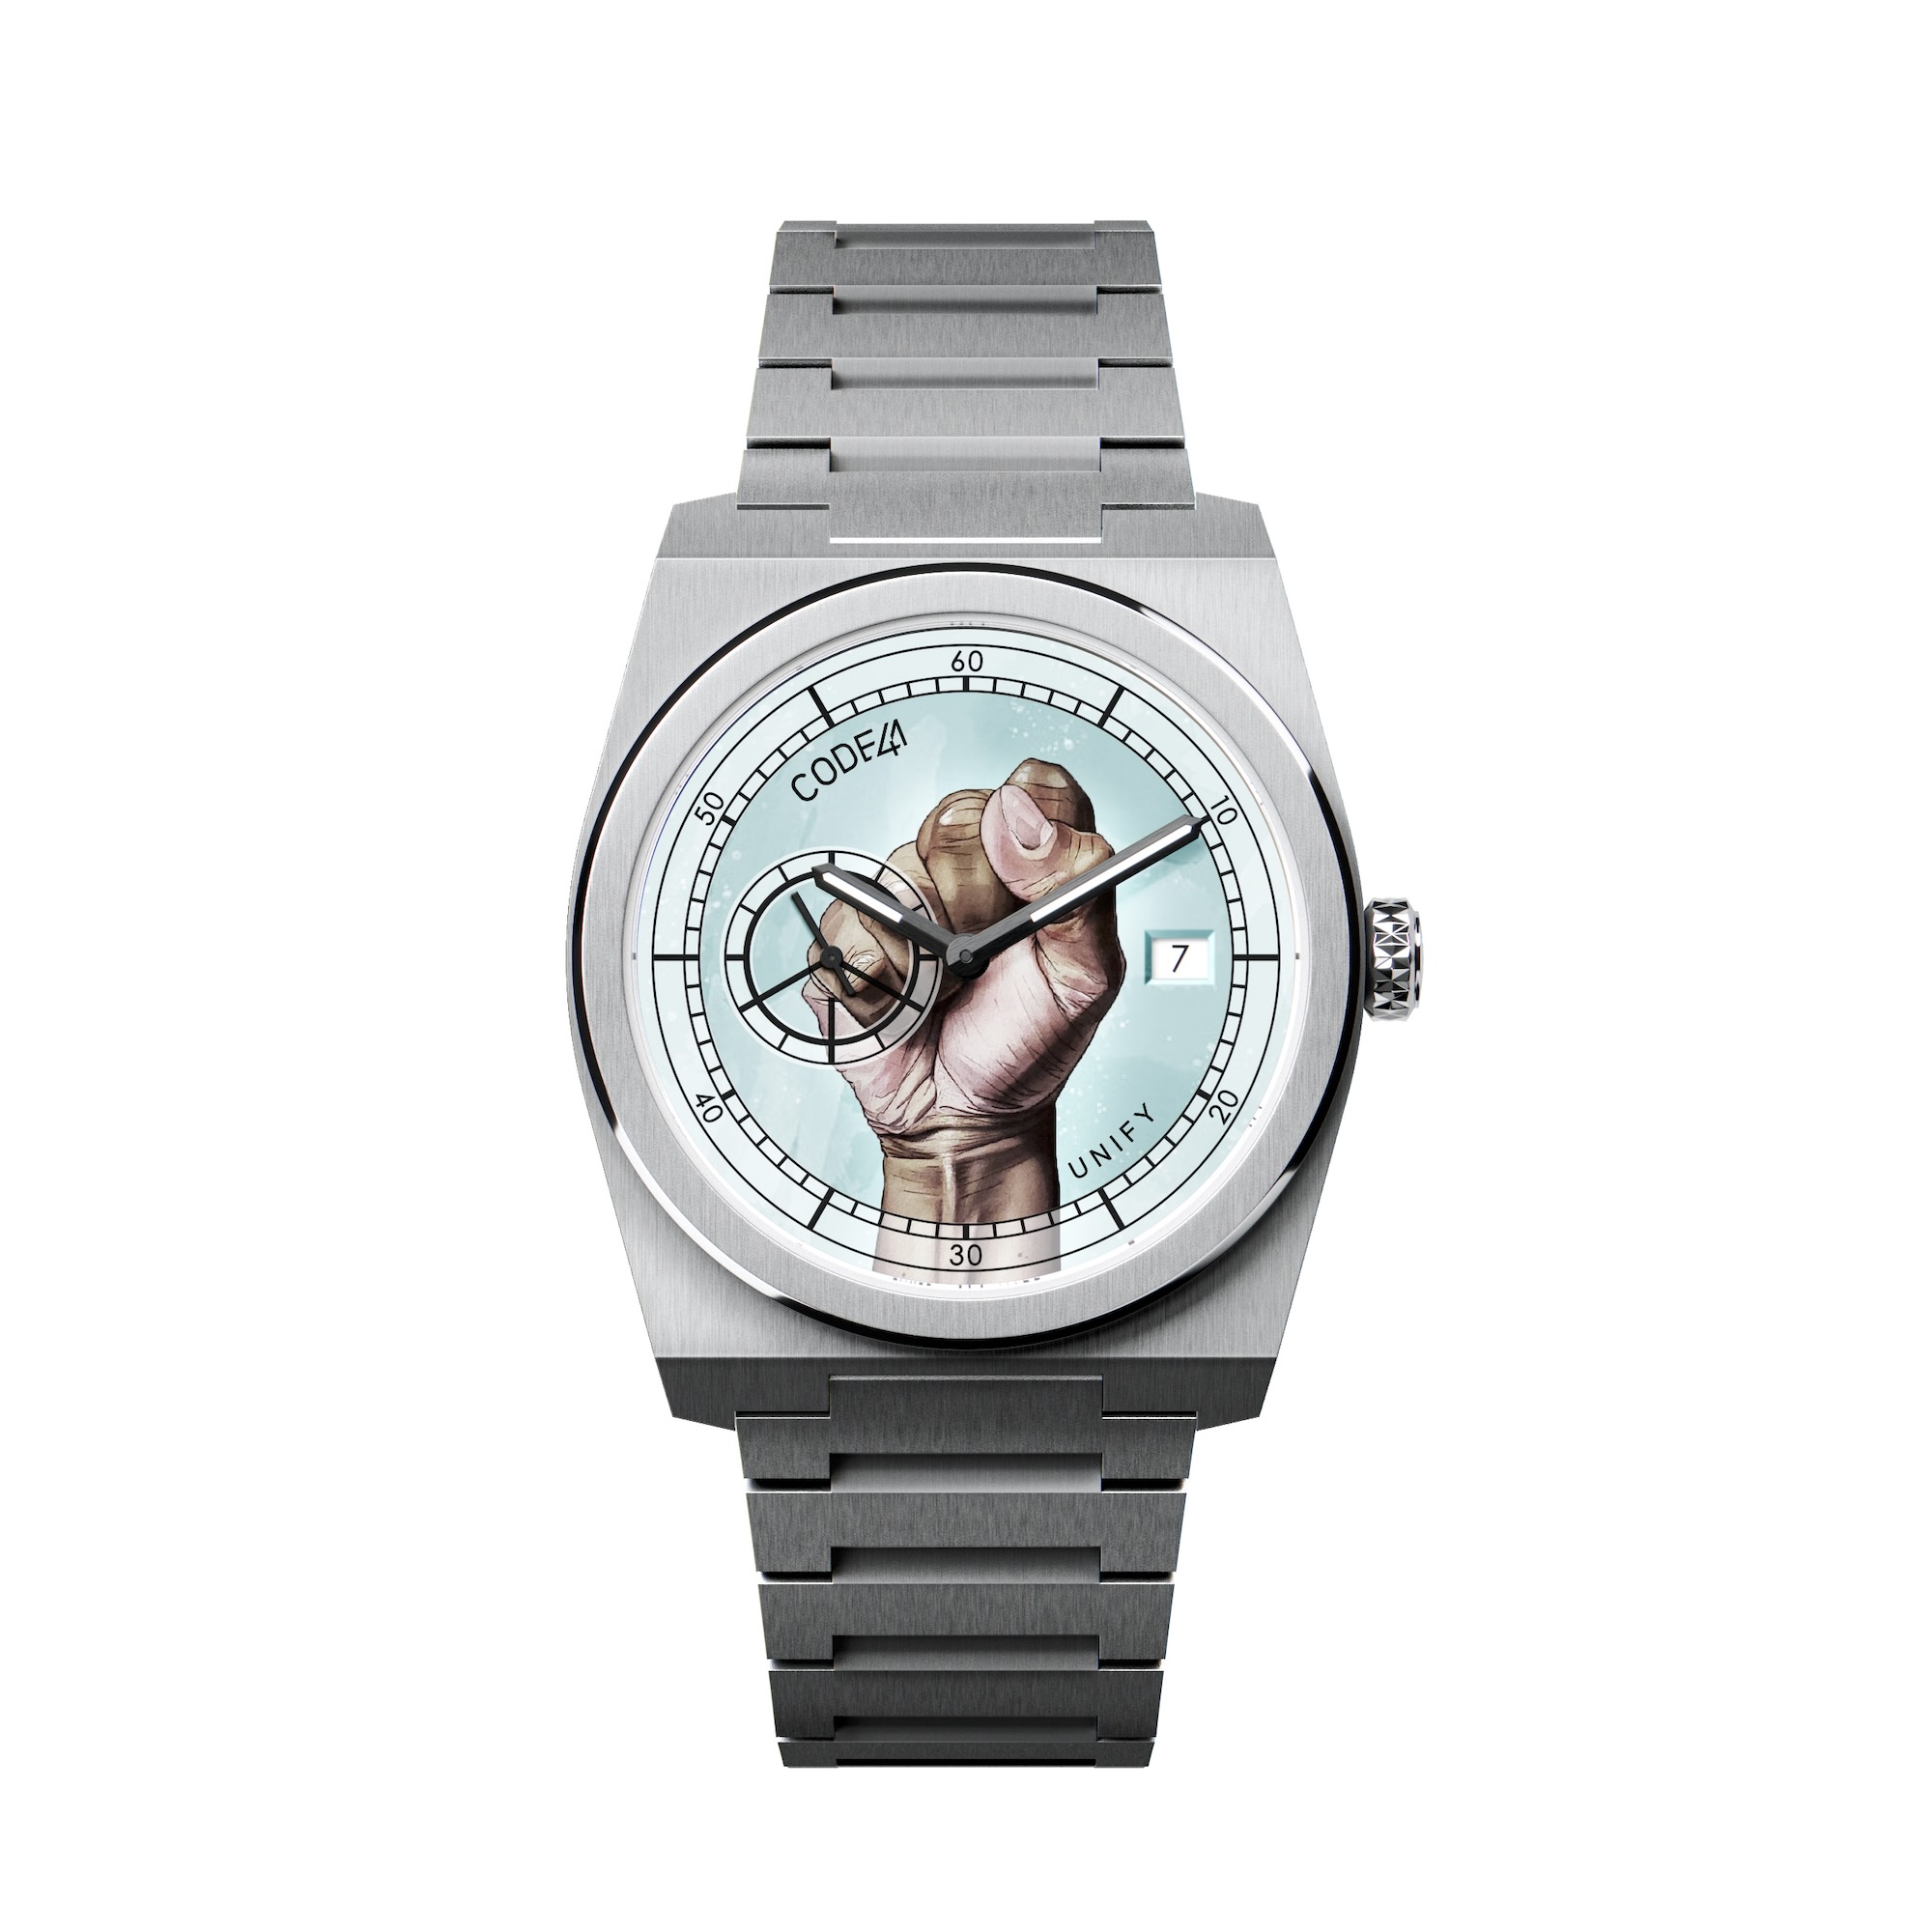 Отпразднуйте равенство и равноправие с помощью коллекции часов UNIFY от CODE41